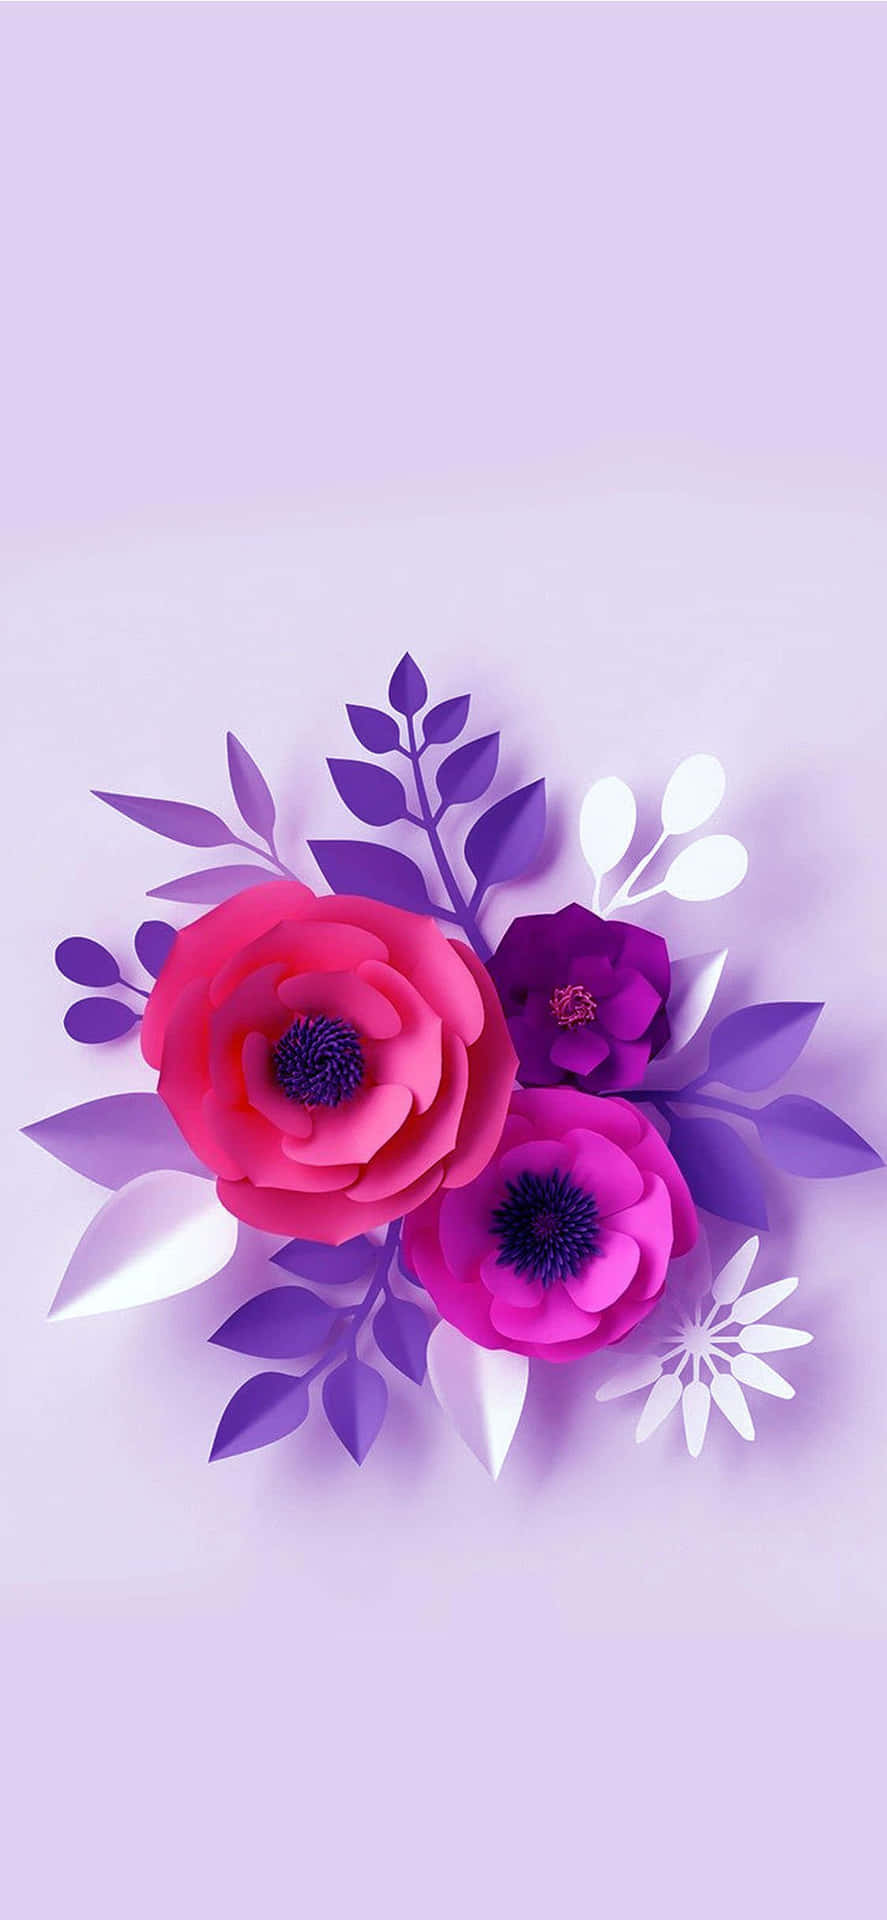 Unarreglo Colorido De Flores En El Fondo De Un Iphone. Fondo de pantalla